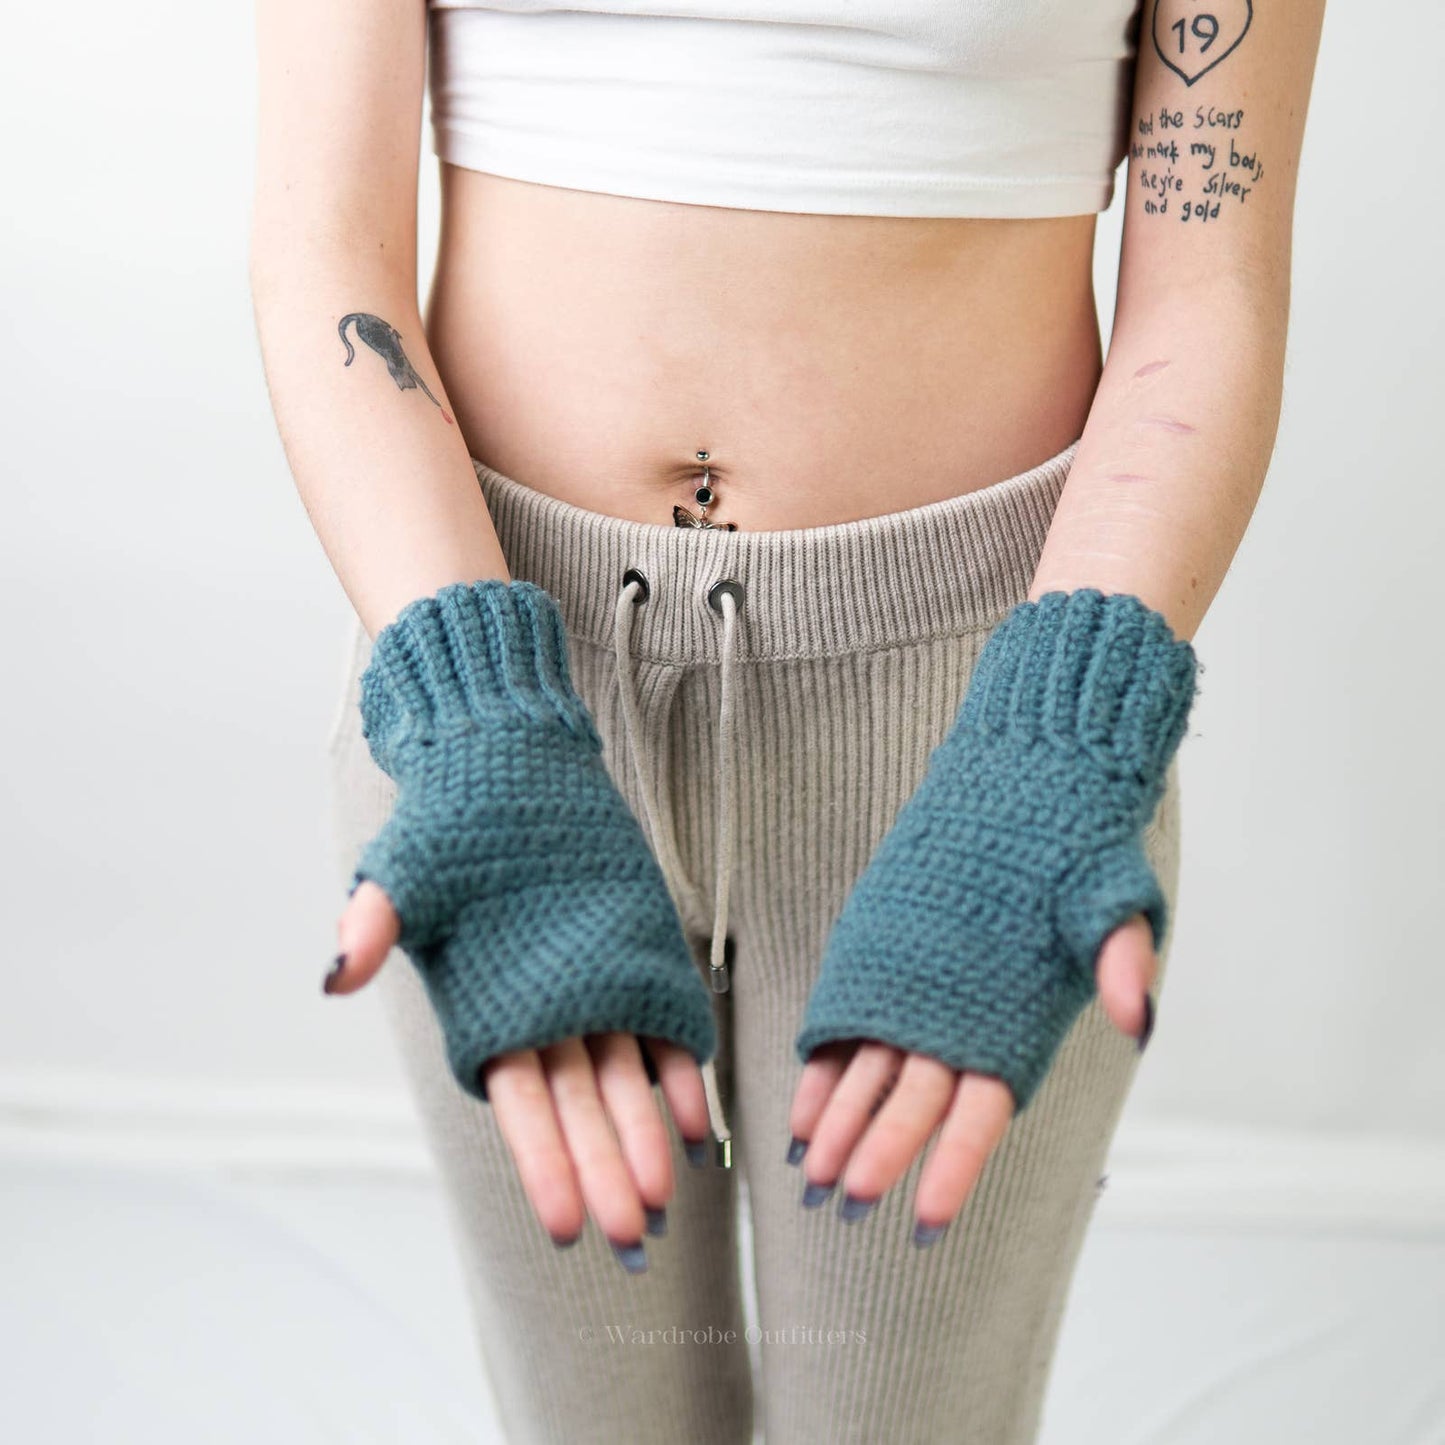 Handmade Crochet Knit Sky Blue Beanie Newsboy Cap & Fingerless Glove Set